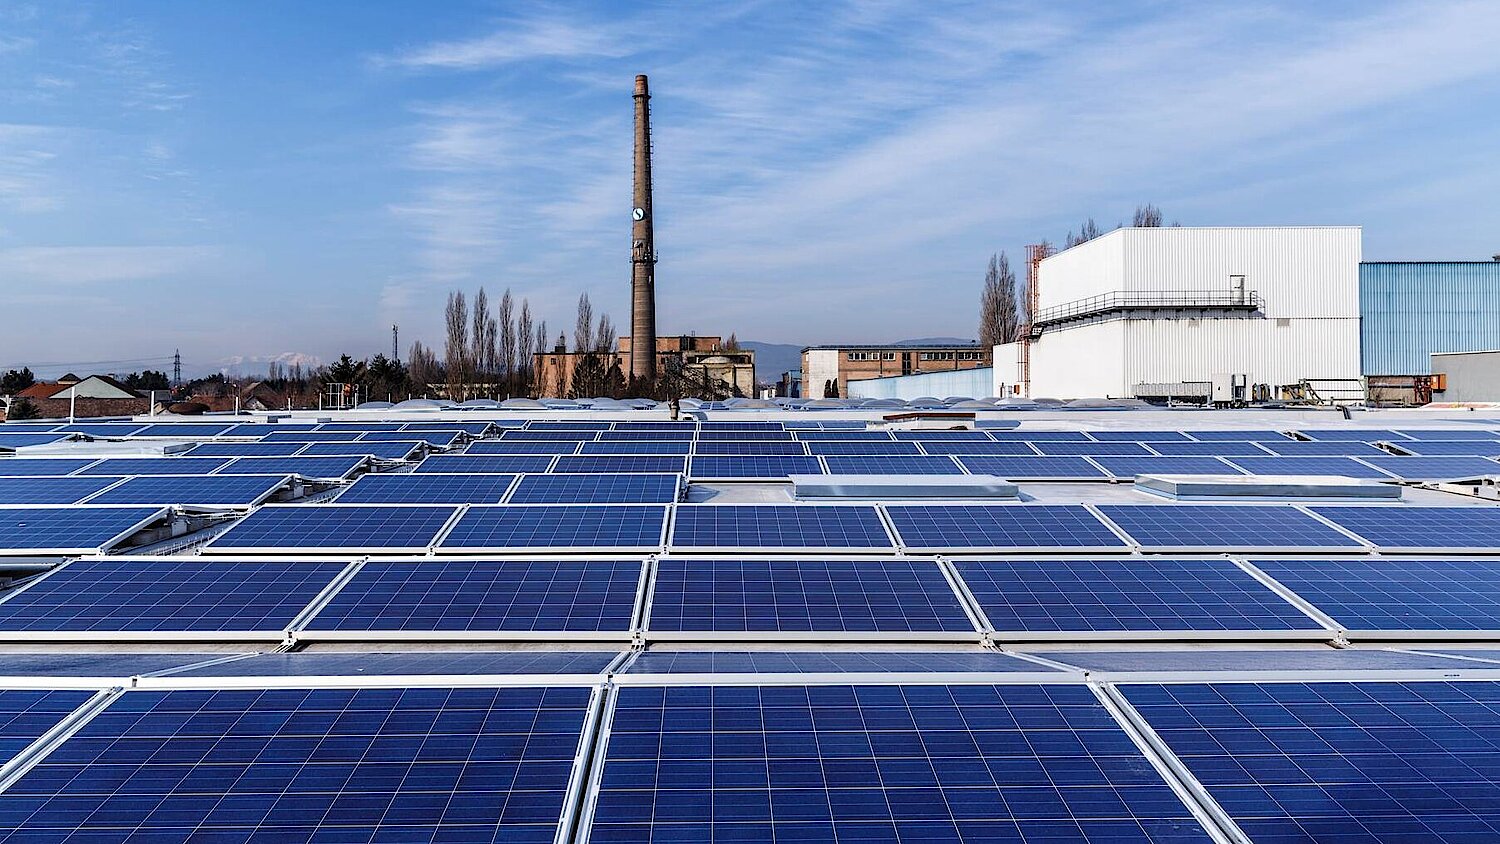 Dach - Photovoltaik Anlage des neuen Gewerbeparks 